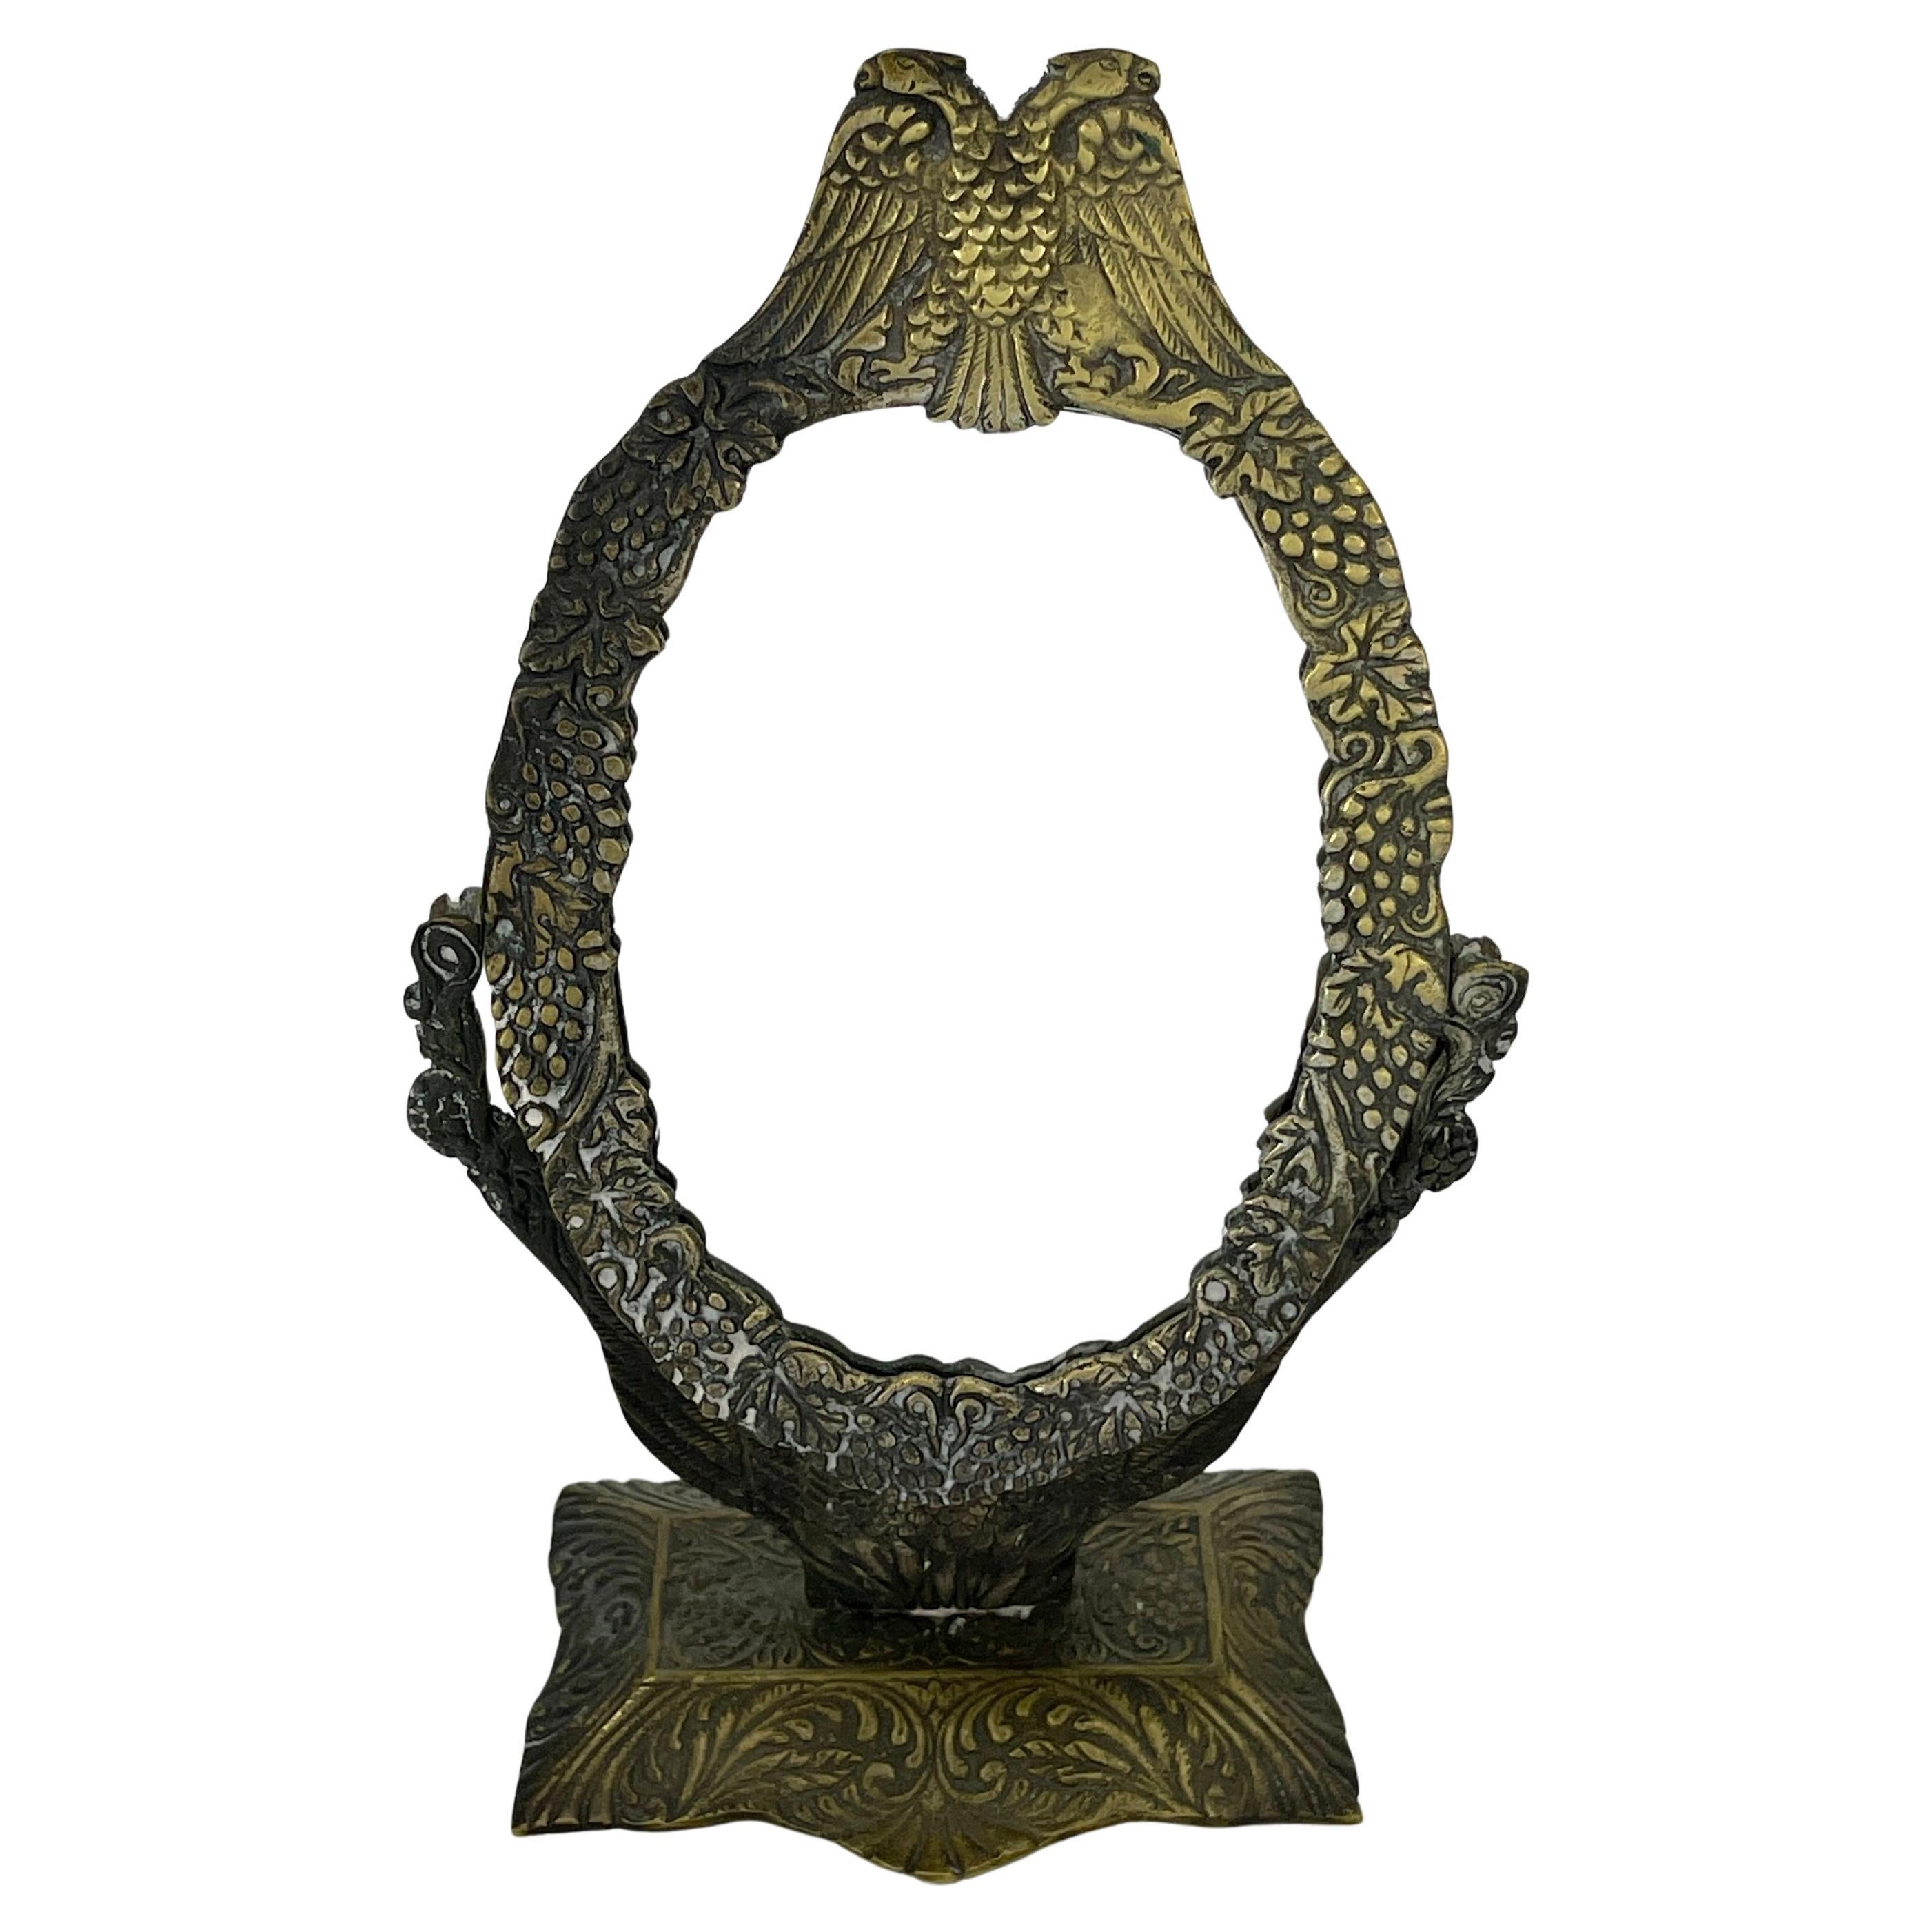 Petit miroir de courtoisie en bronze avec aigle double et décoration florale sur une base rectangulaire.
Le miroir peut être russe, français ou autrichien.